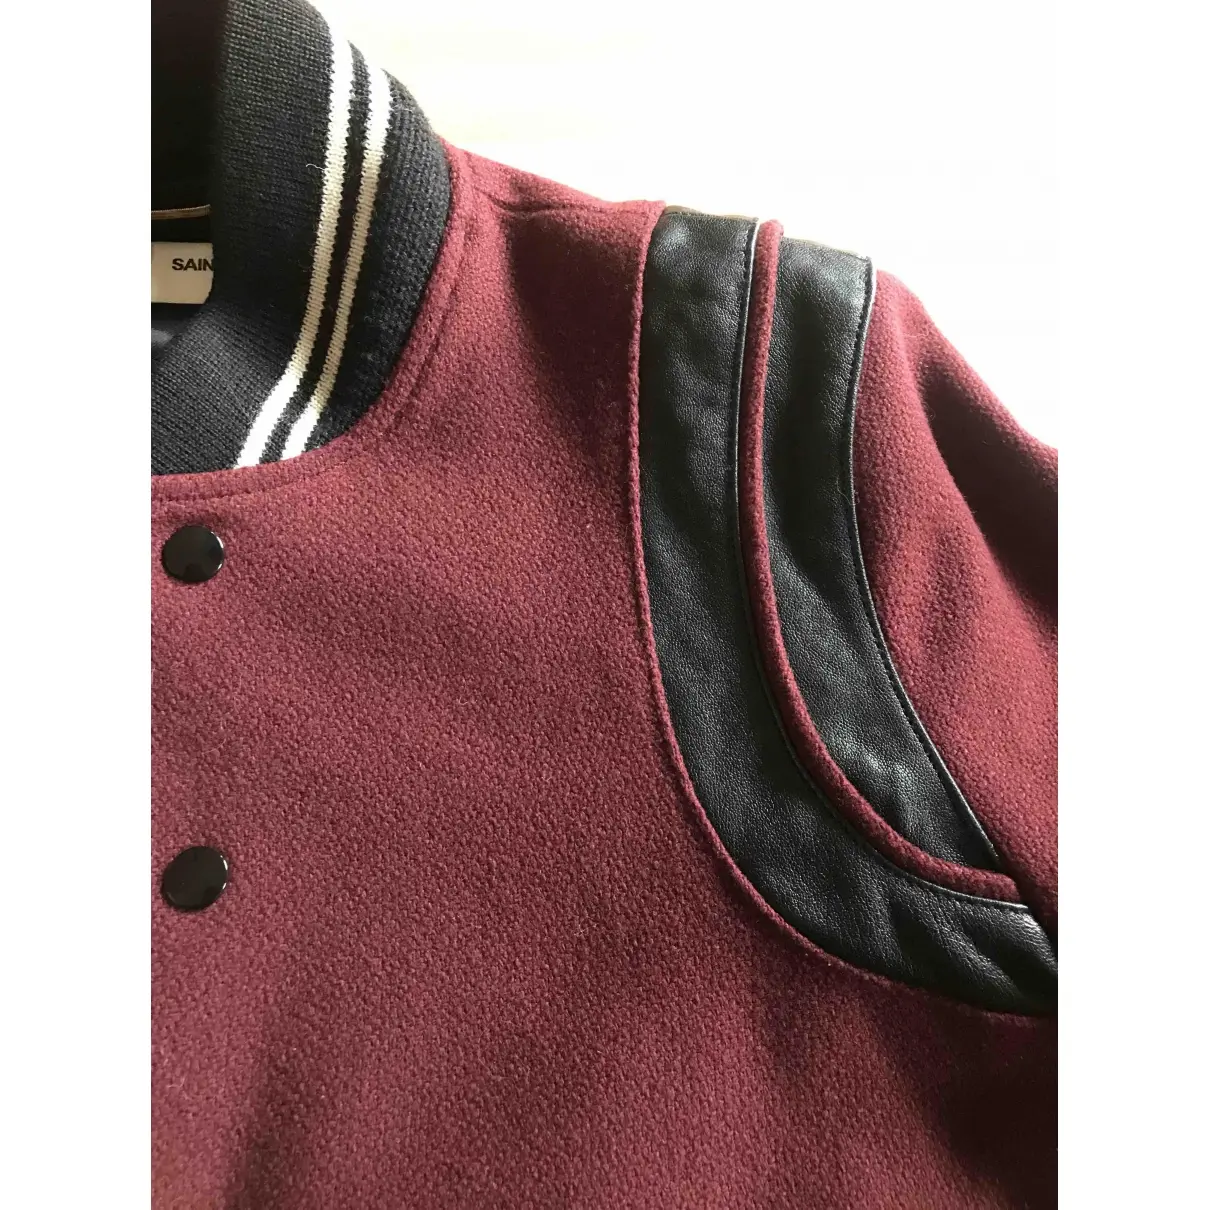 Saint Laurent Wool jacket for sale